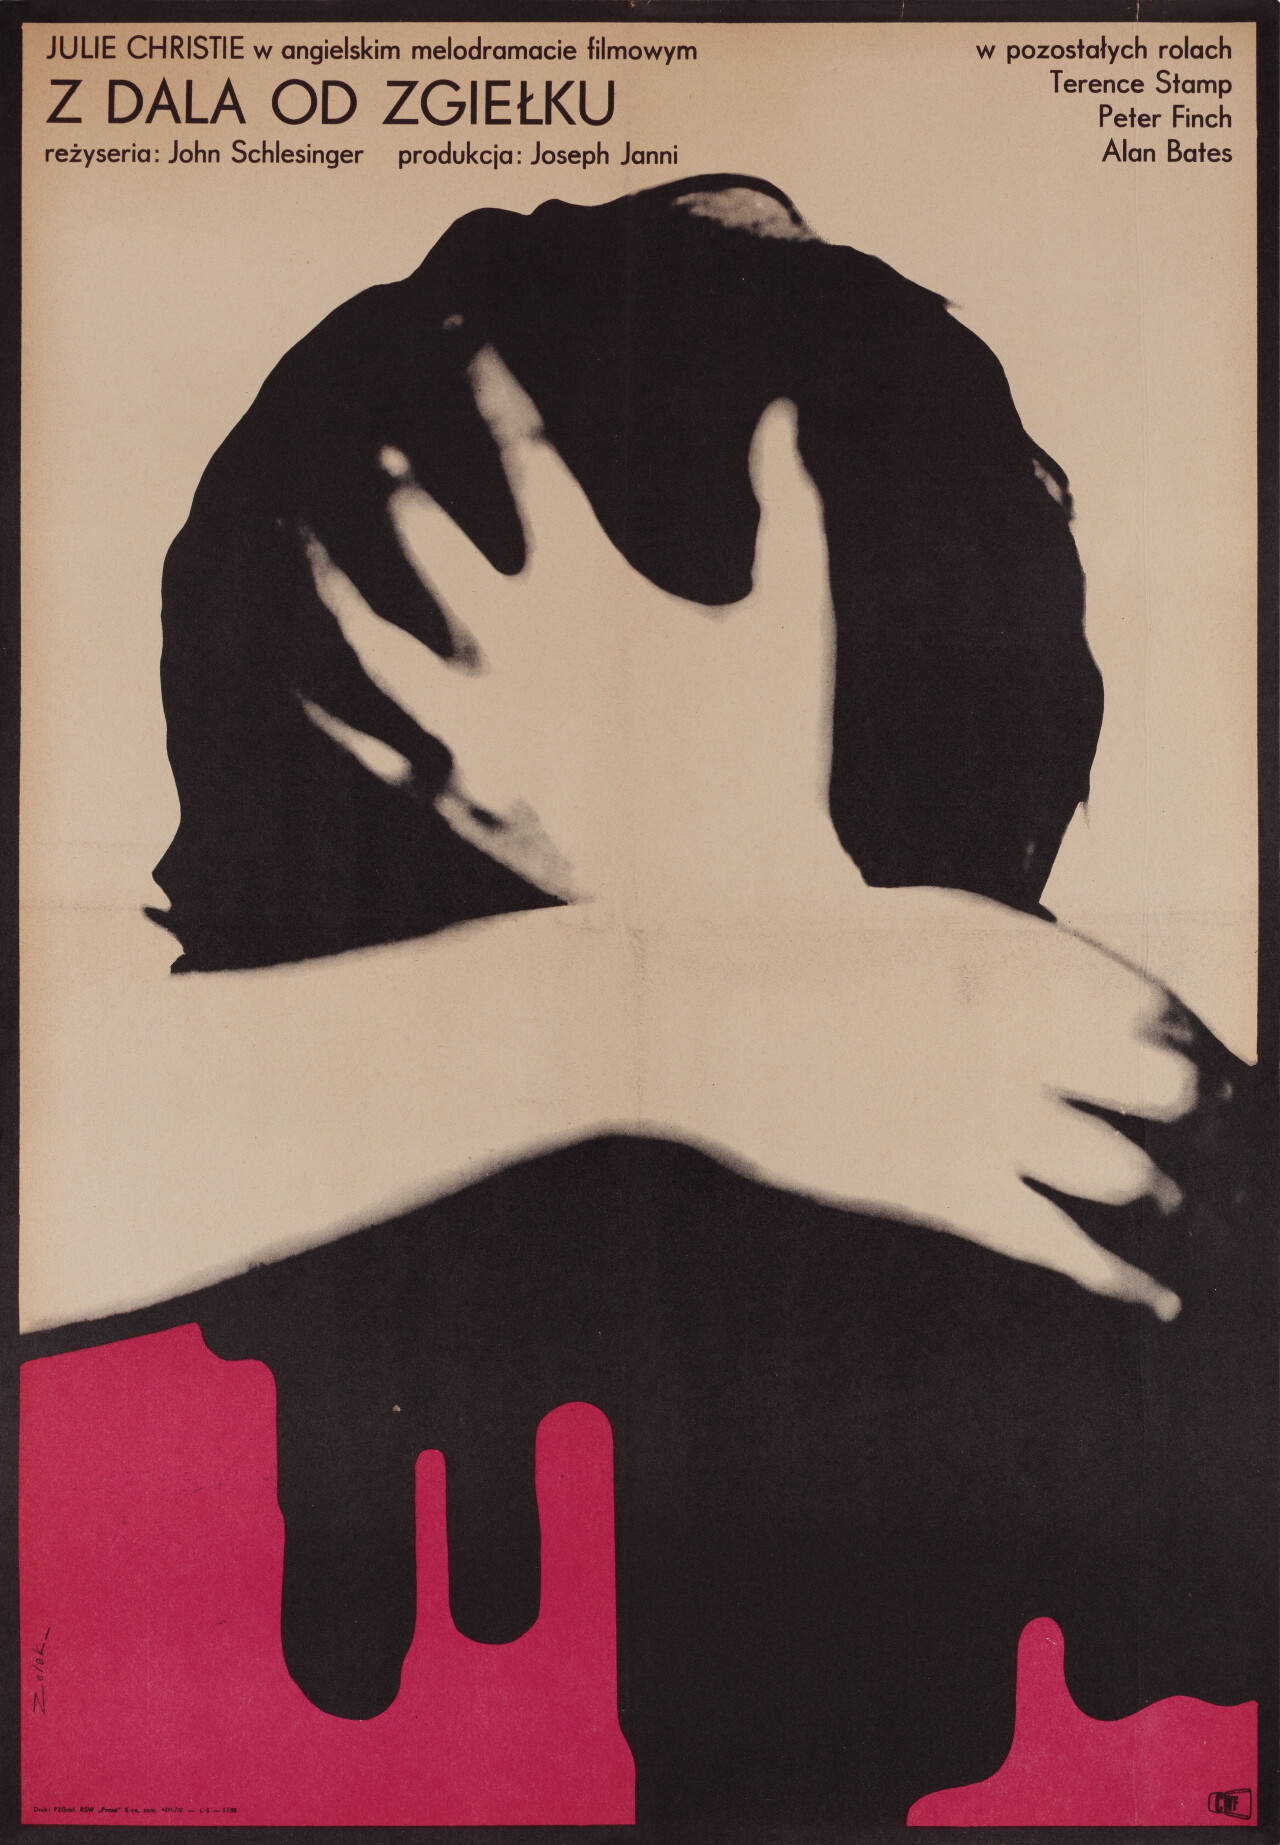 Вдали от безумной толпы (Far from the Madding Crowd, 1967), режиссёр Джон Шлезингер, польский постер к фильму, автор Бронислав Зелек (графический дизайн, 1967 год)